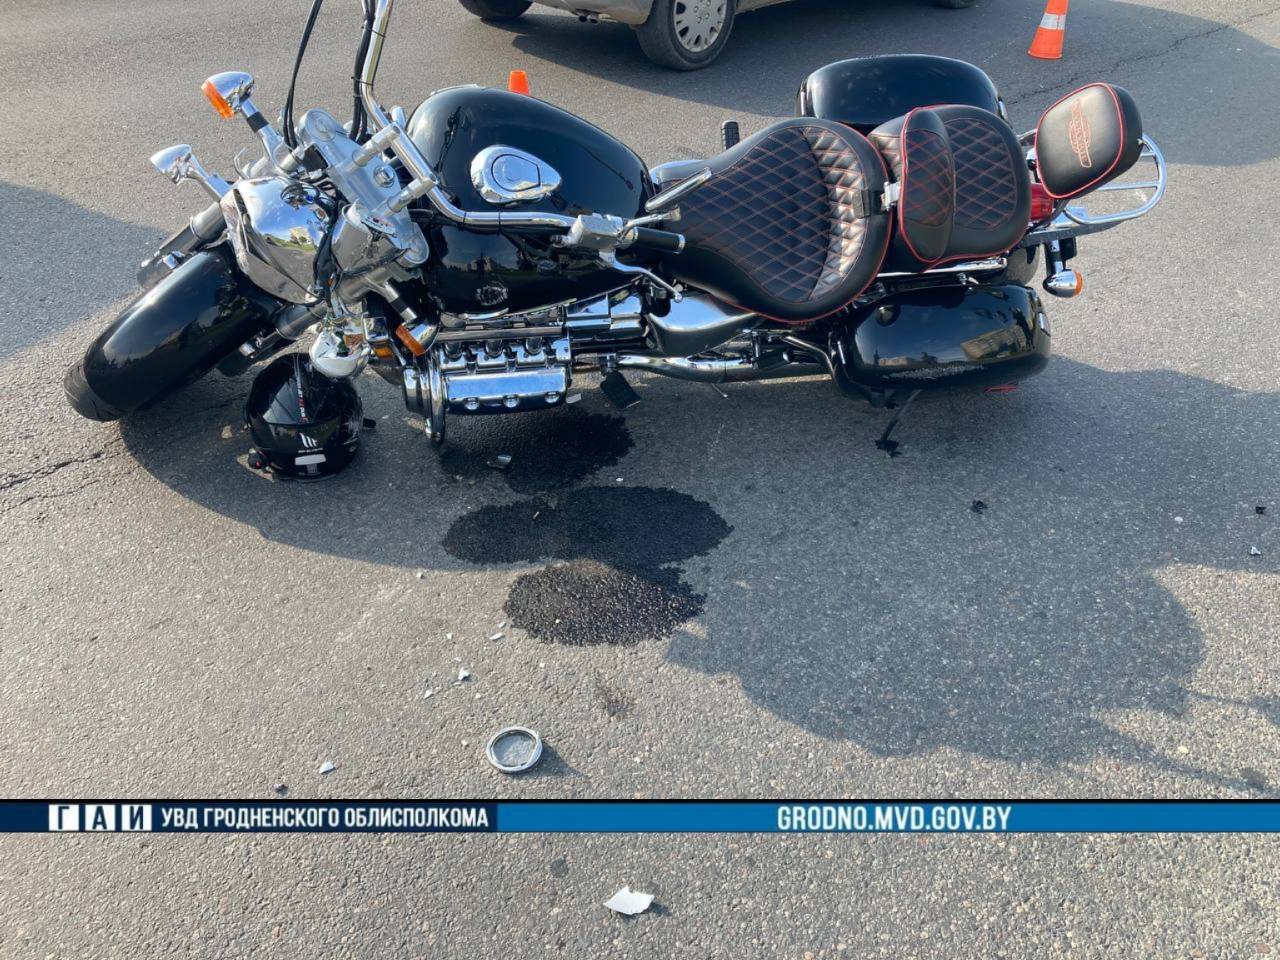 Утром в Гродно мотоциклист упал во время движения: мужчину доставили в больницу